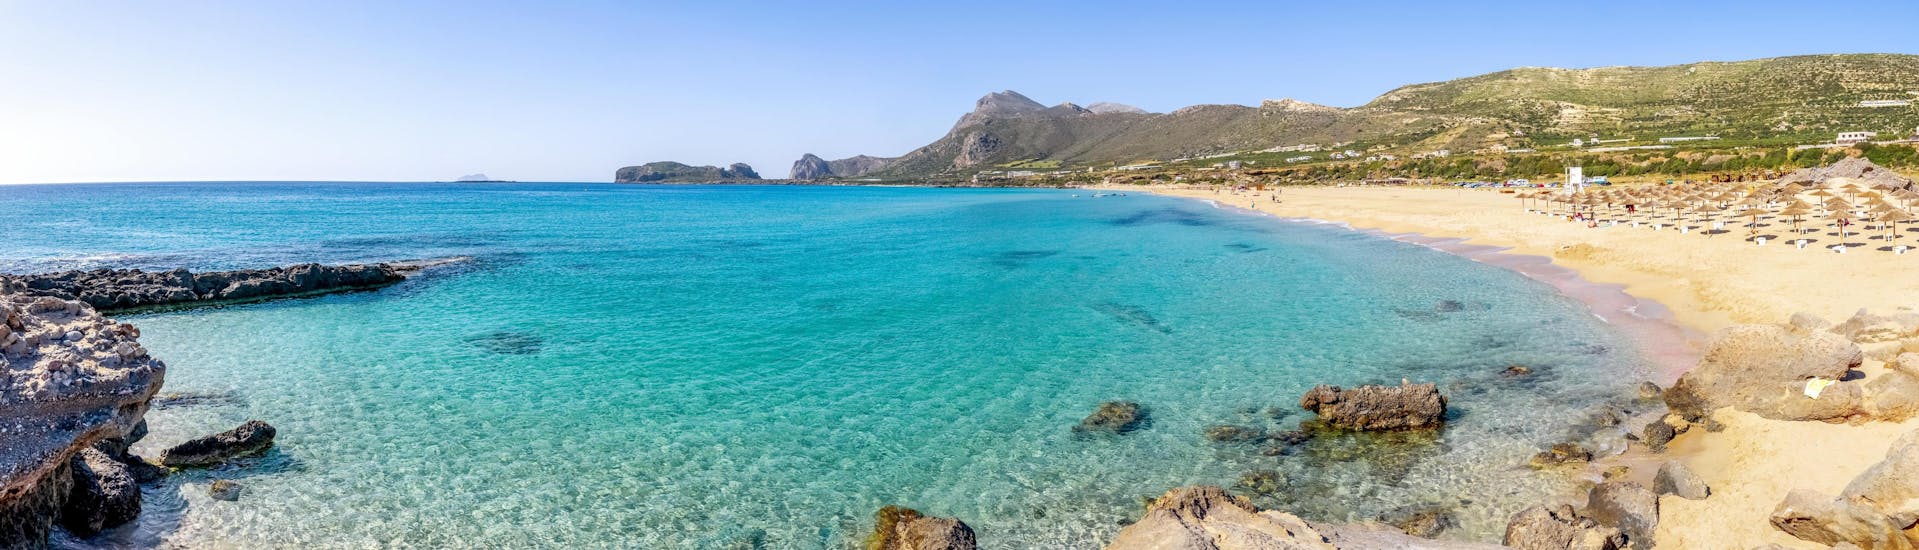 Vista de la playa de Falasarna, Creta, un destino popular para las excursiones en barco. 